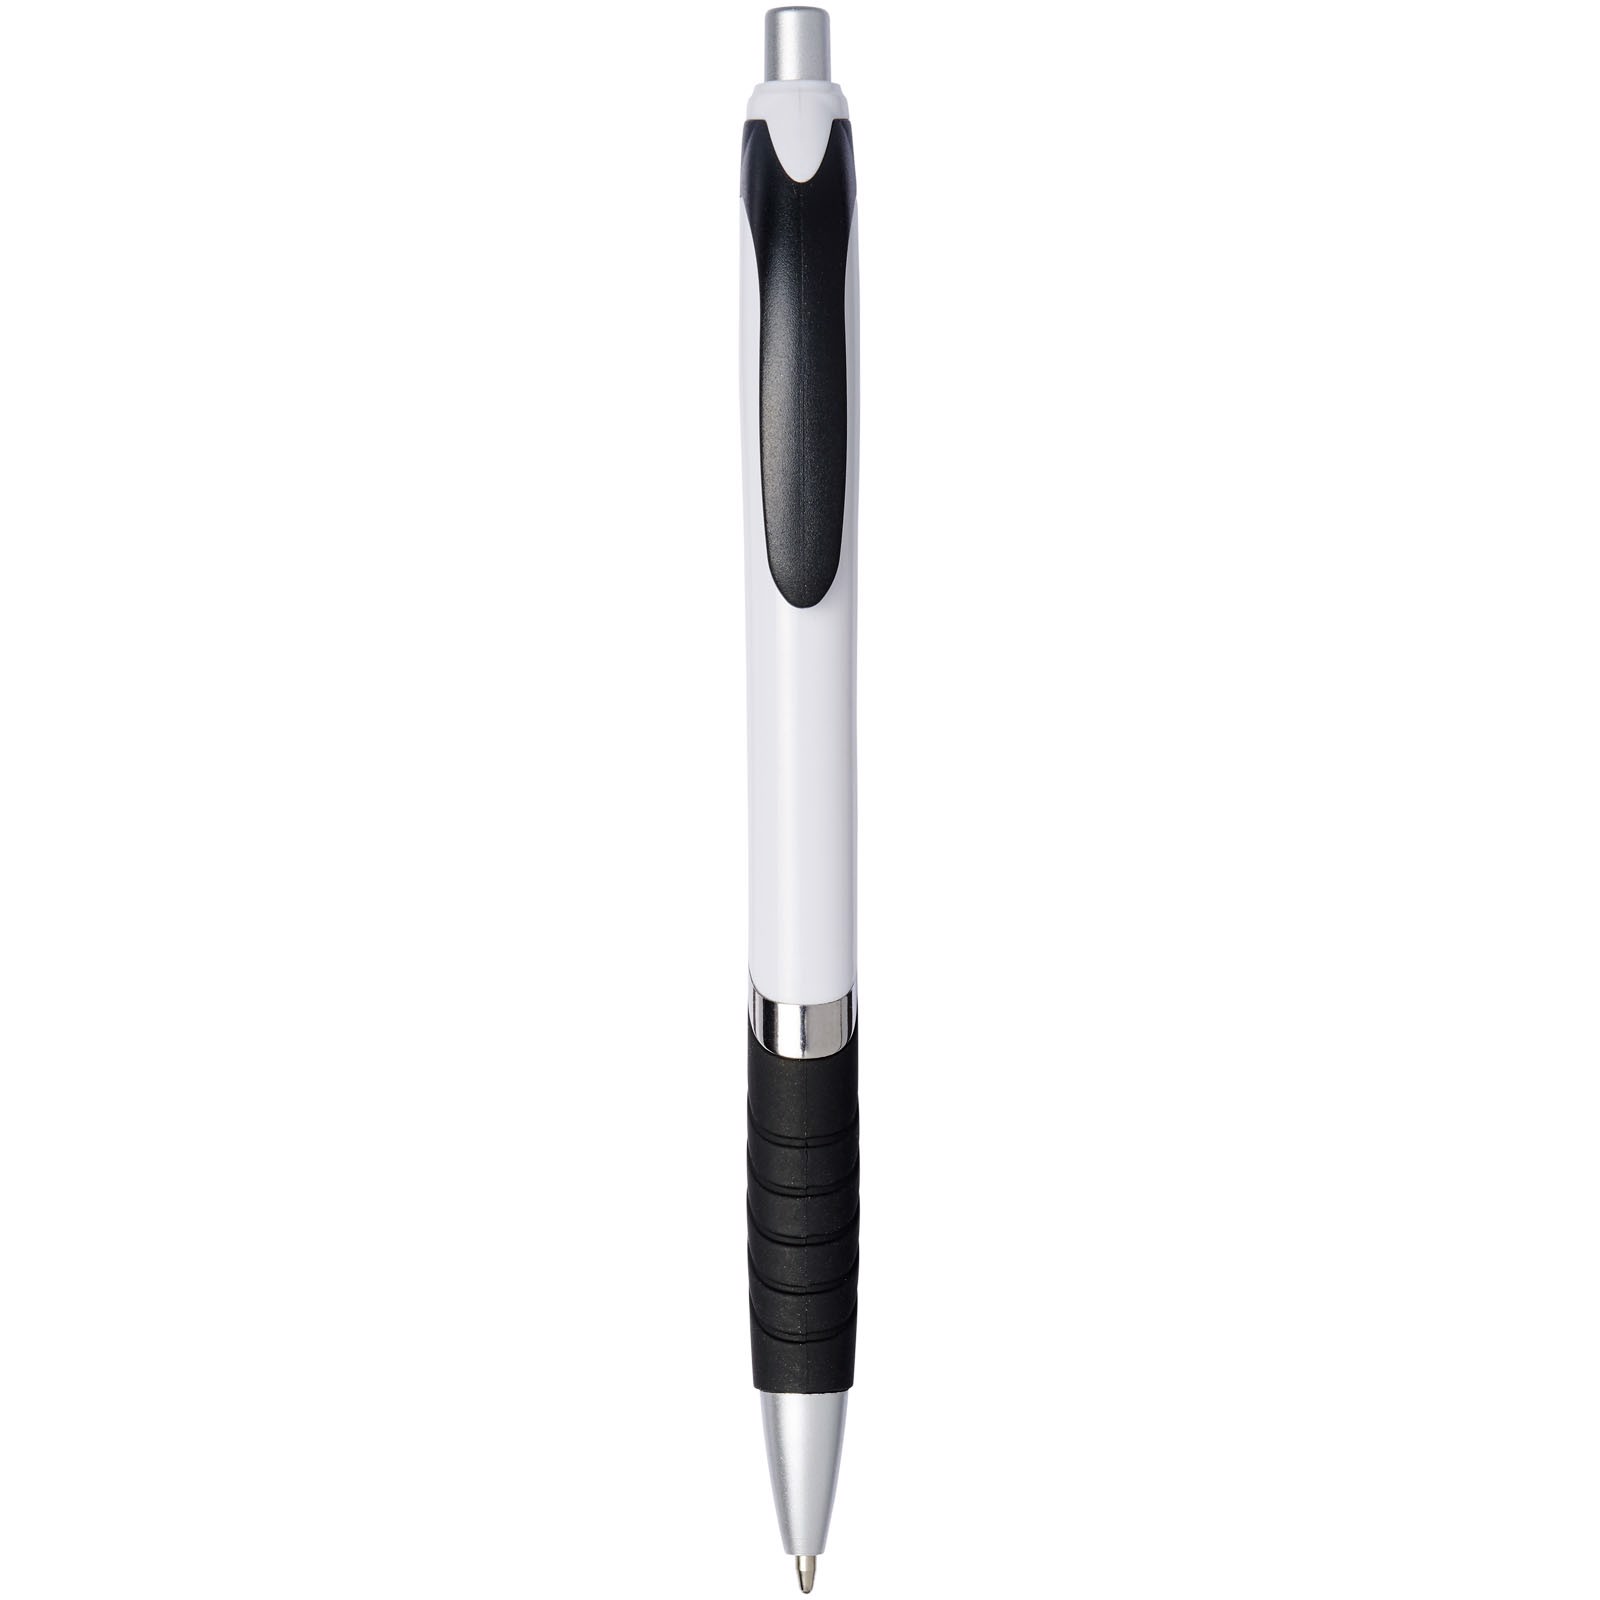 Kuličkové pero Turbo s gumovým úchopem - Bílá / Černá